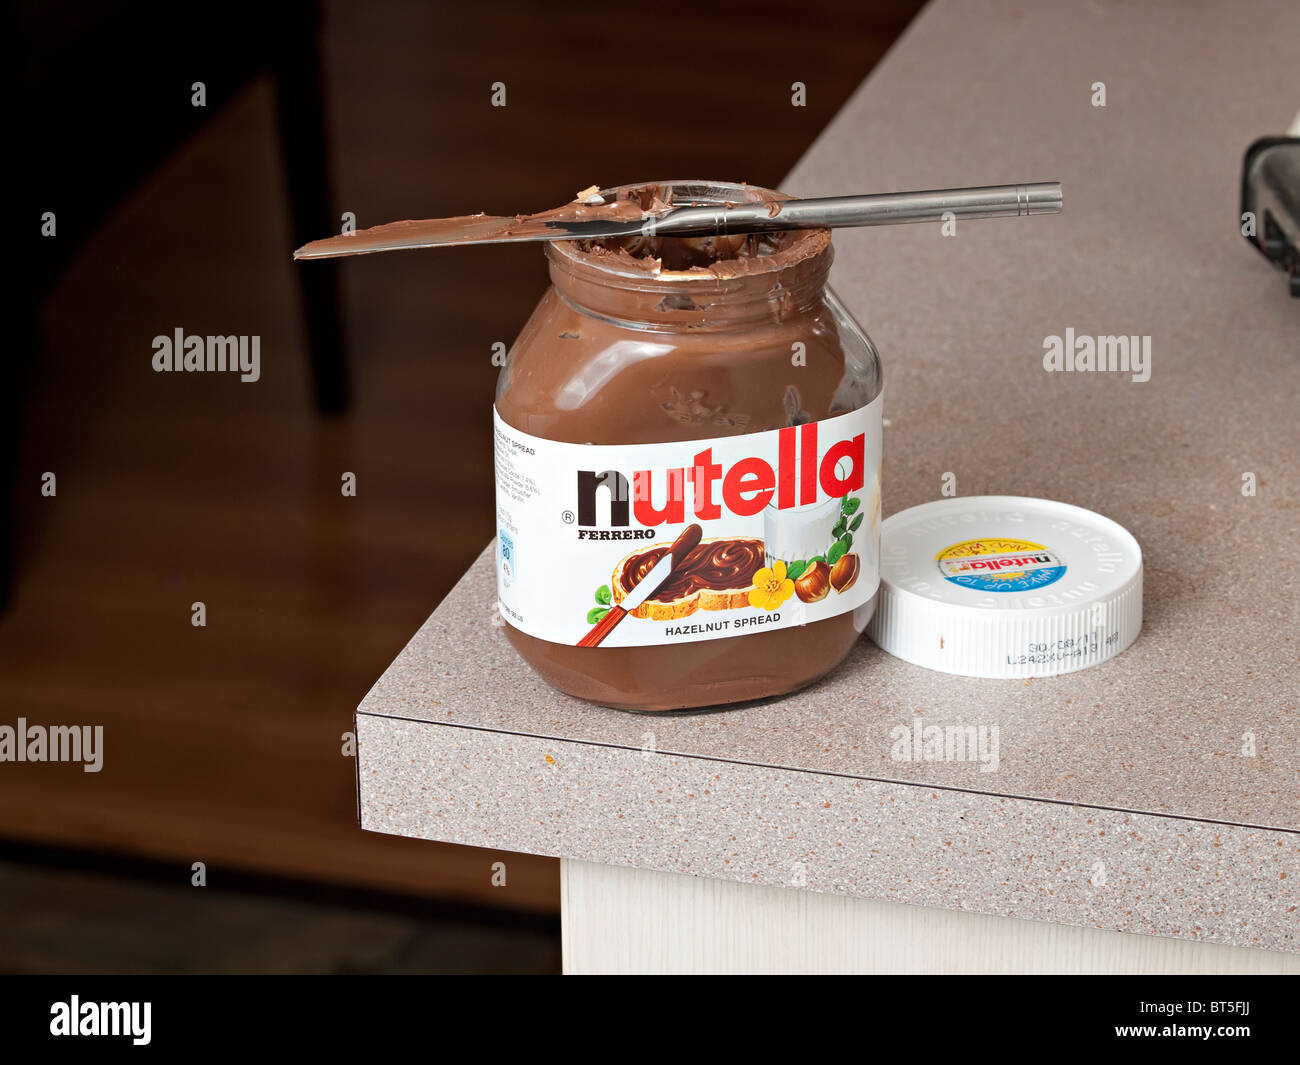 Une boîte de Nutella sur un banc de la cuisine avec un couteau smeraed  Photo Stock - Alamy